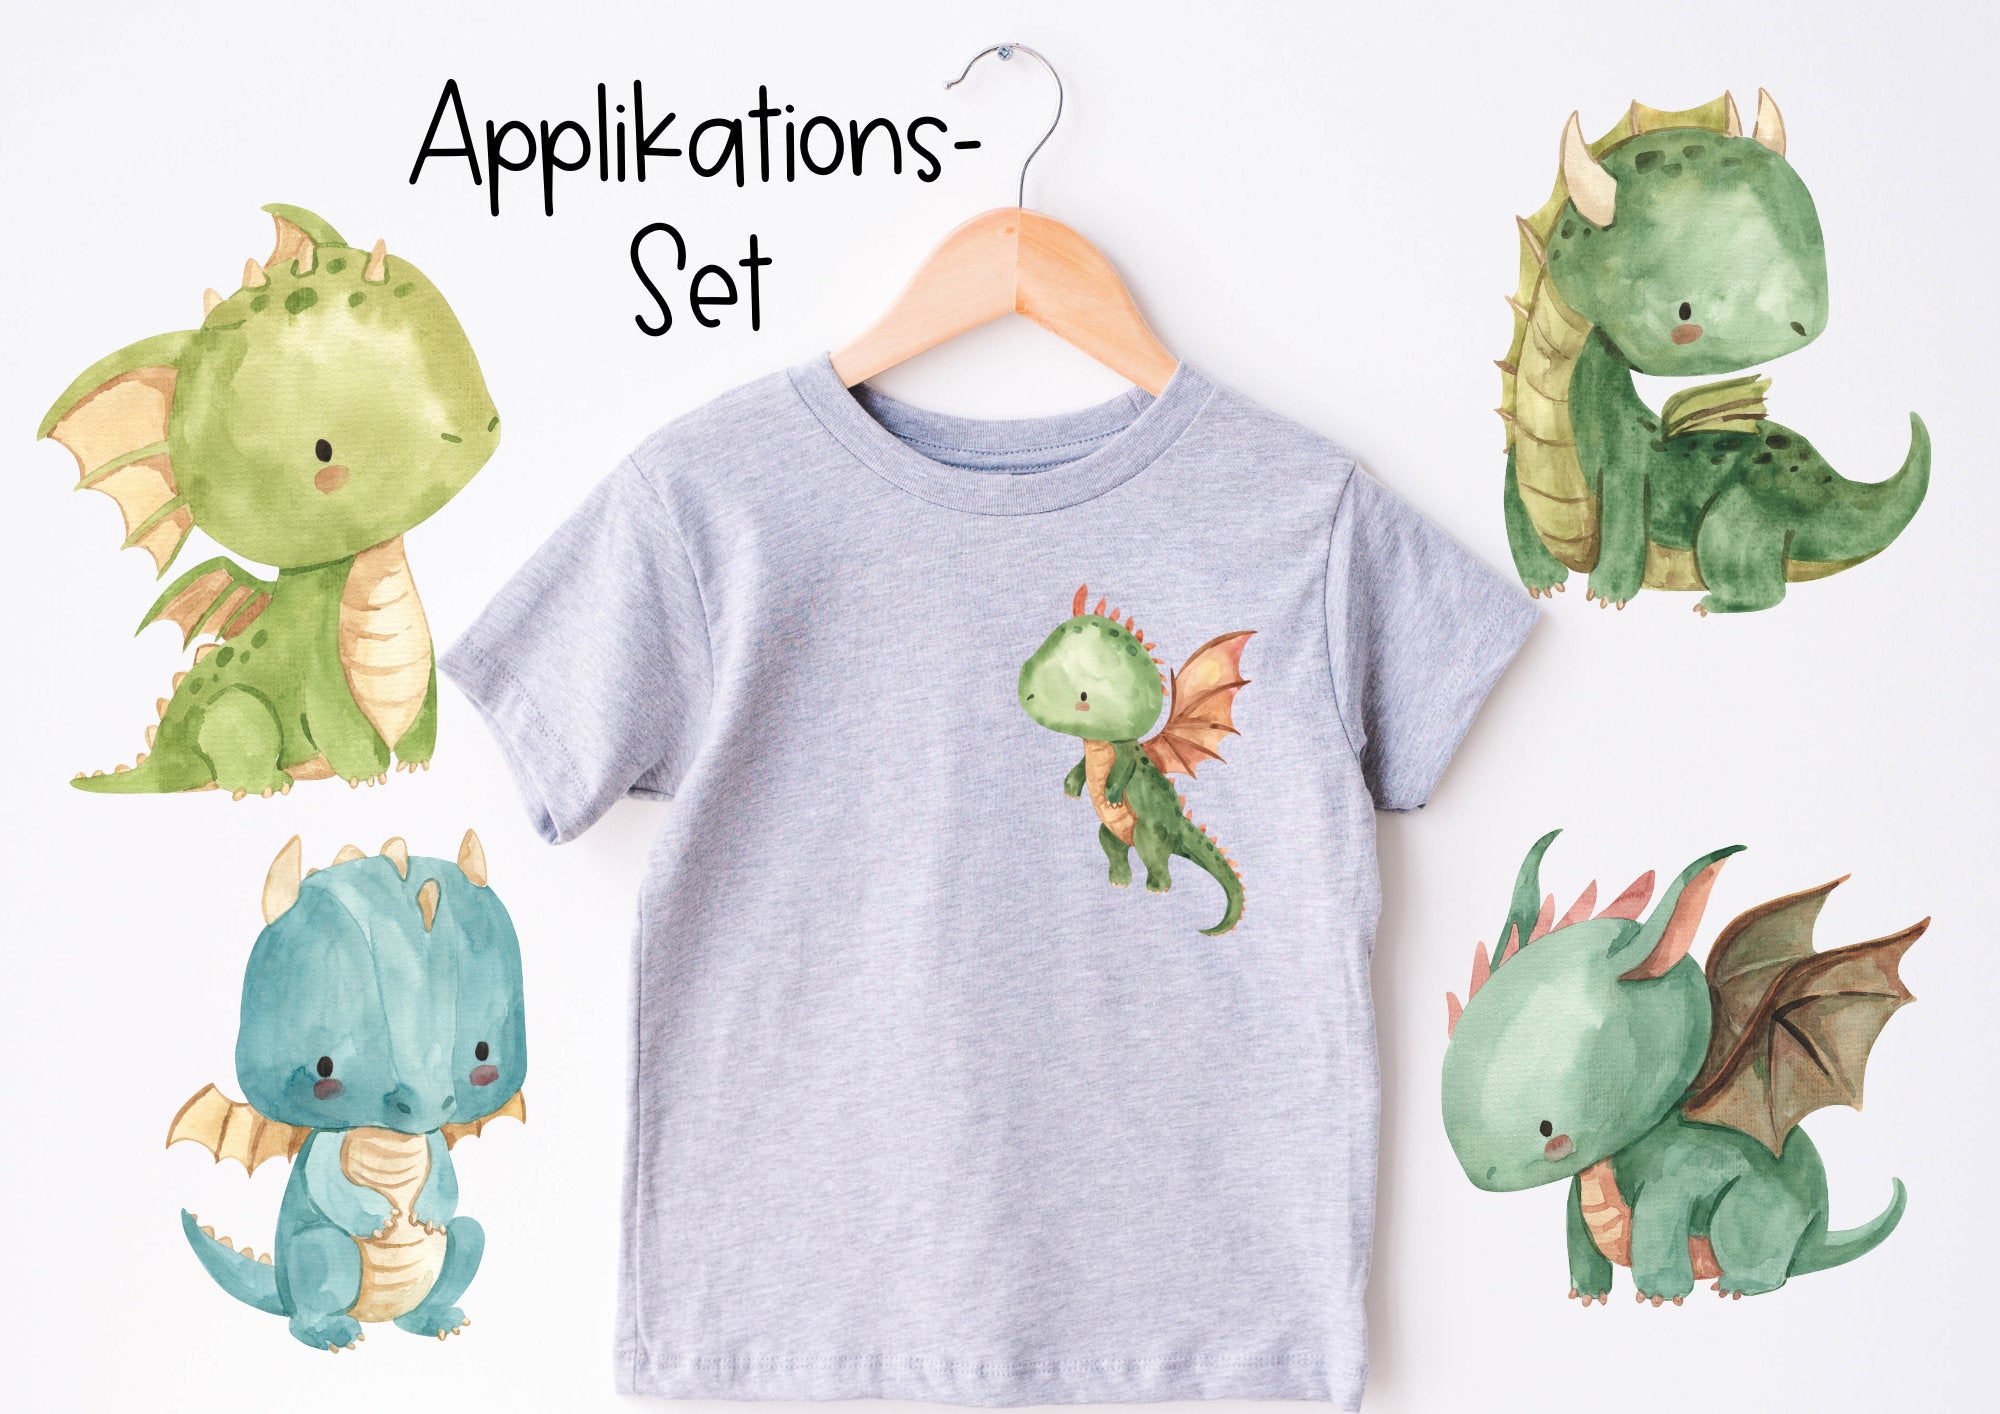 Set Bügelbild Applikation zum Veredeln von Shirts Hosen Kleidung DTF Druck Applizierung Drache Dragon Märchen